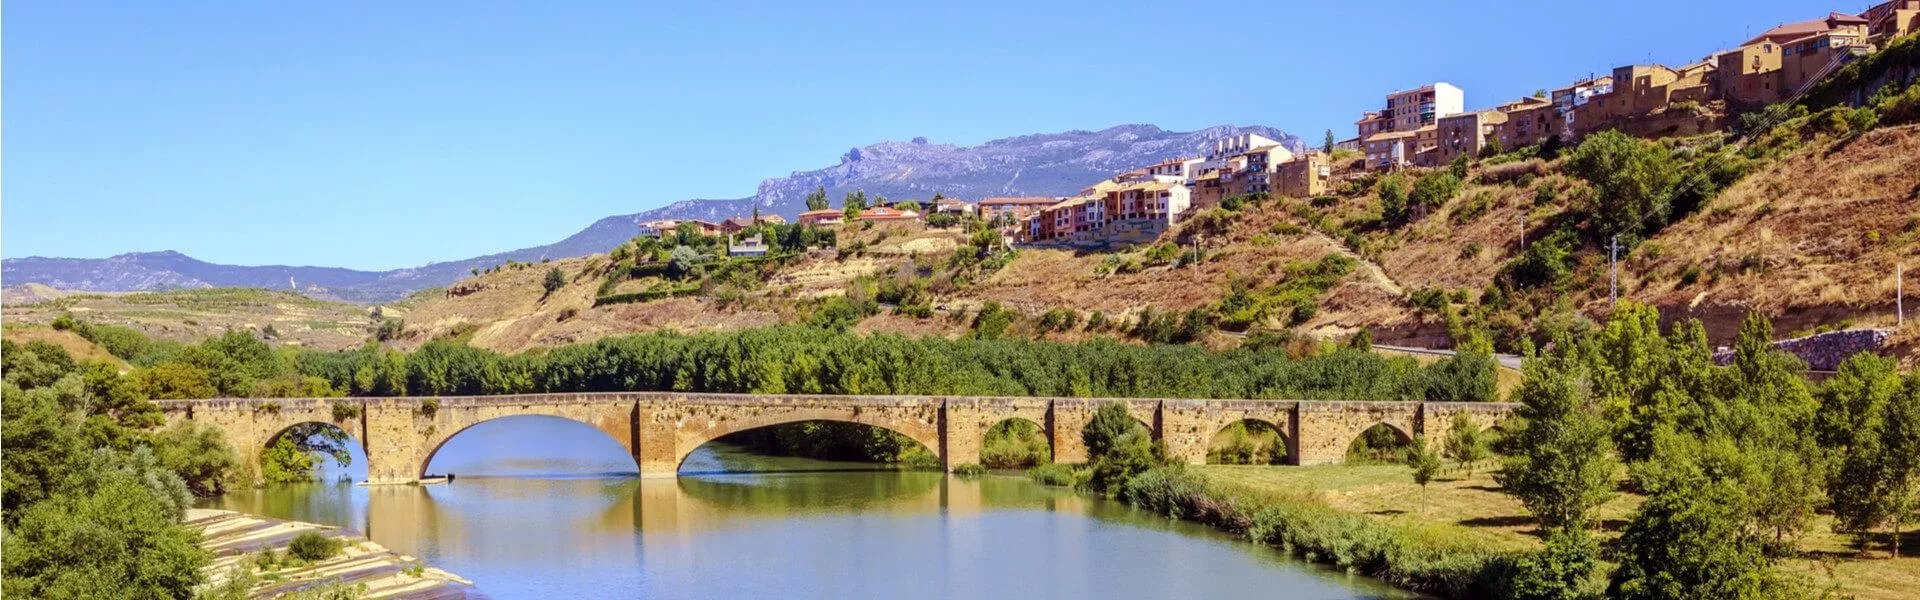 Campings zoeken in La Rioja  